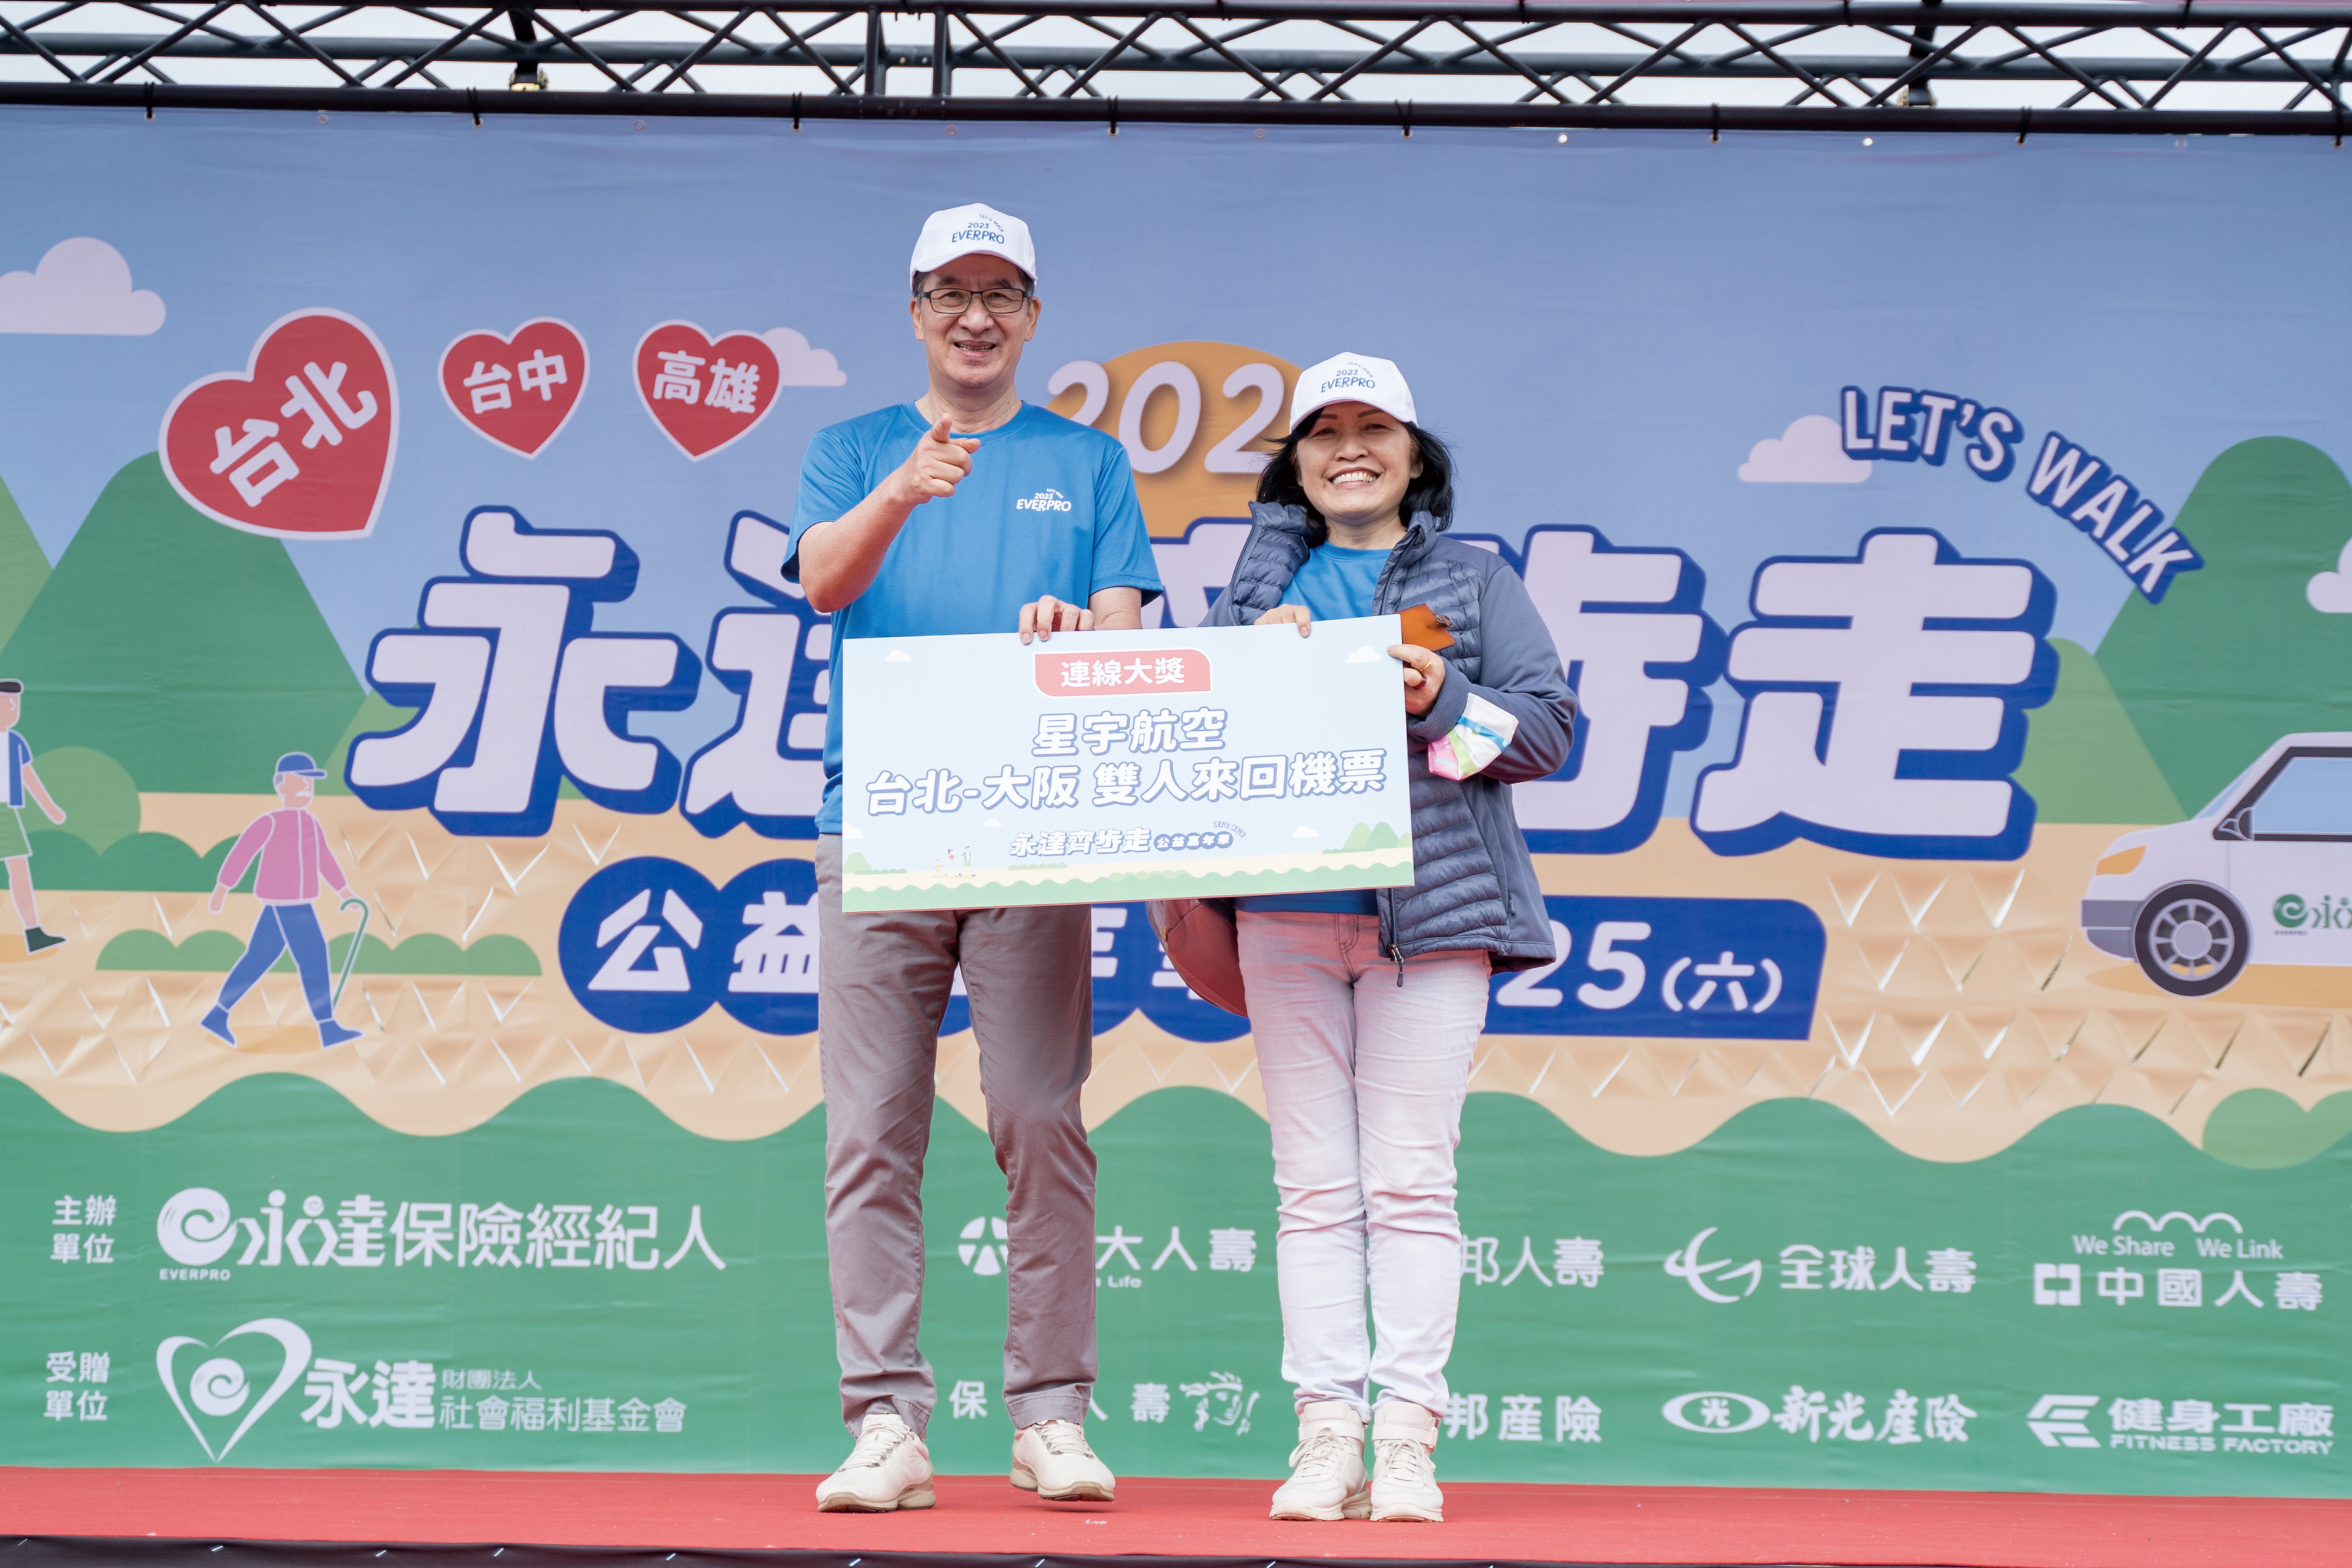 陳慶鴻總經理（圖左1）頒贈連線大獎（台北-大阪雙人機票）給幸運得主。